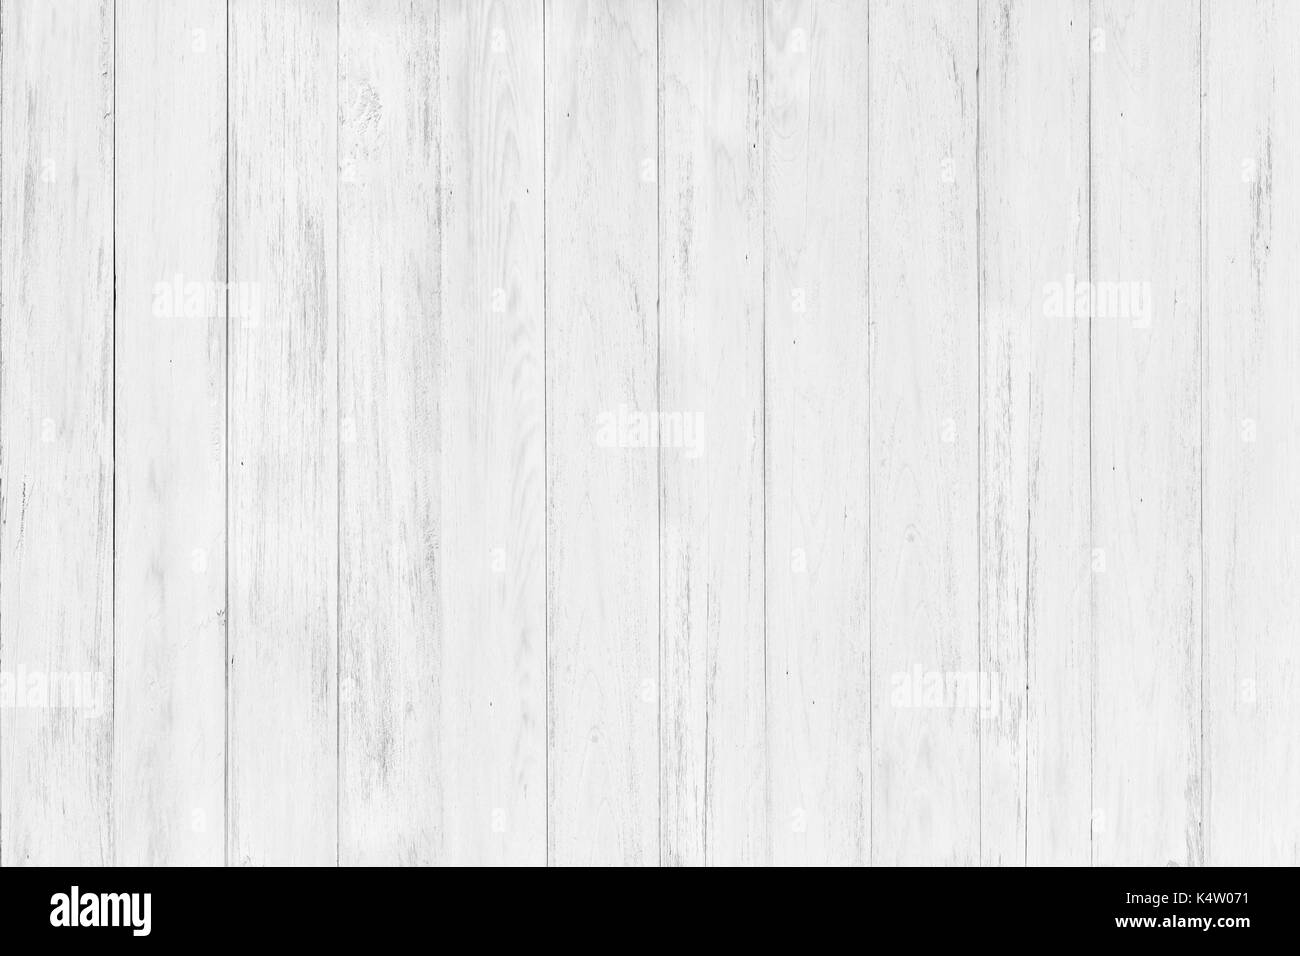 Resumen de superficie rústica mesa de madera blanca textura del fondo.  cerca de paredes rústicas hechas de tablones de mesa de madera blanca de  textura rústica mesa de madera blanca Fotografía de